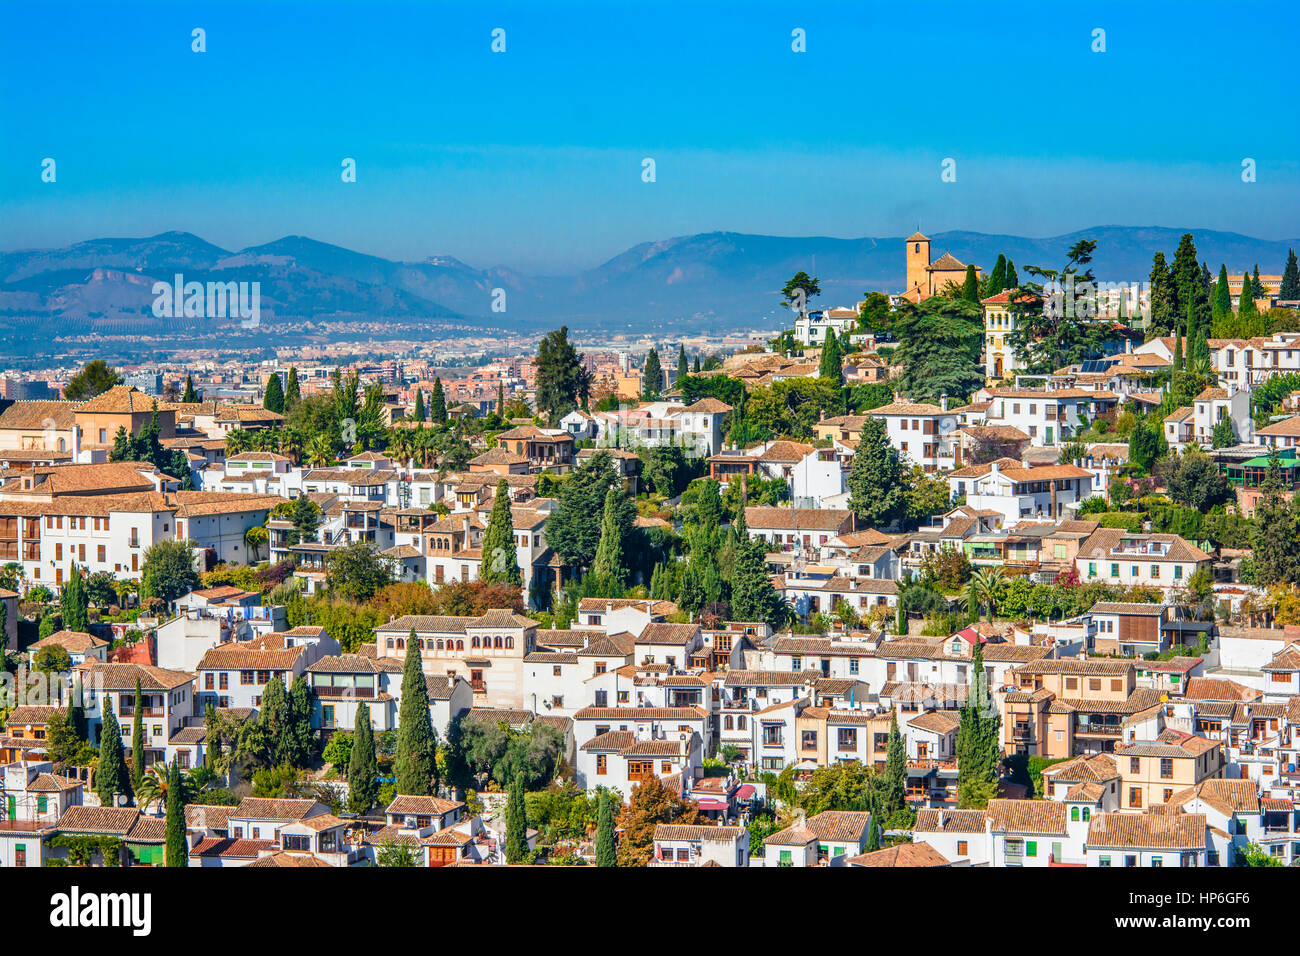 Granada, Espagne - Albaicin quartier médiéval maure, architecture arabe traditionnelle de l'Andalousie. Banque D'Images